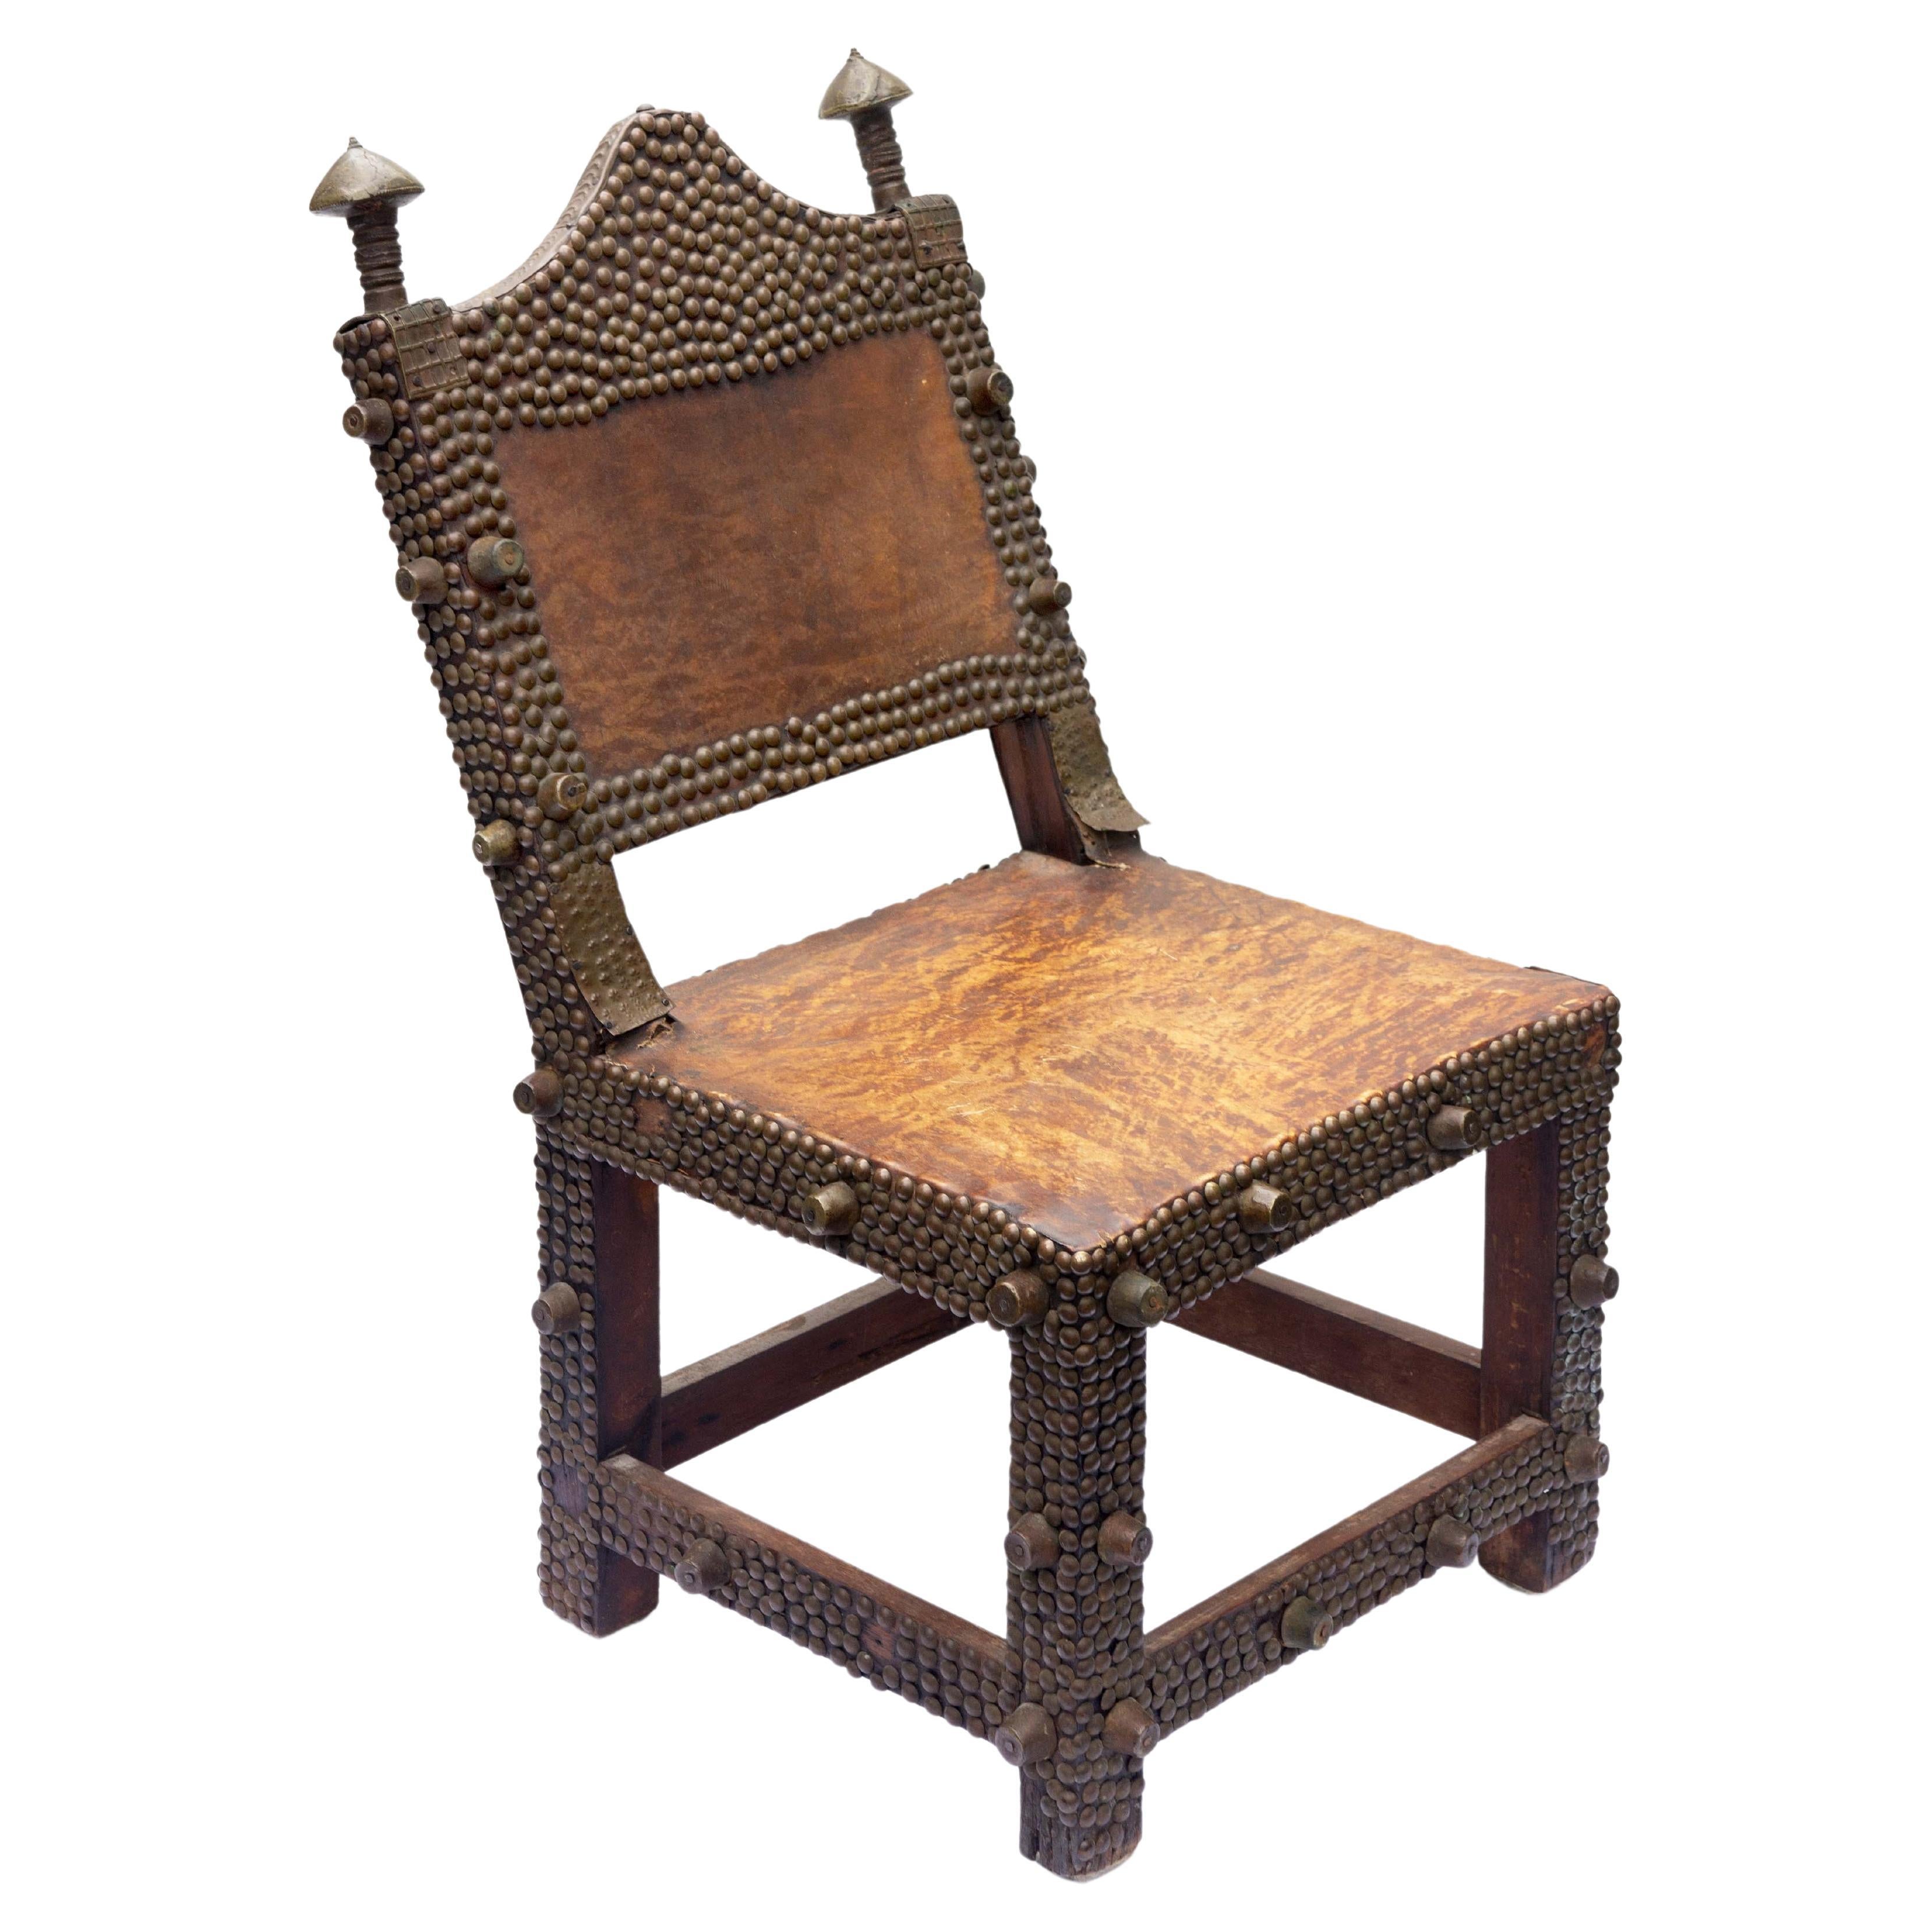 Afrikanischer Asipim-Stuhl von Ashanti King aus Ghana, 19. Jahrhundert